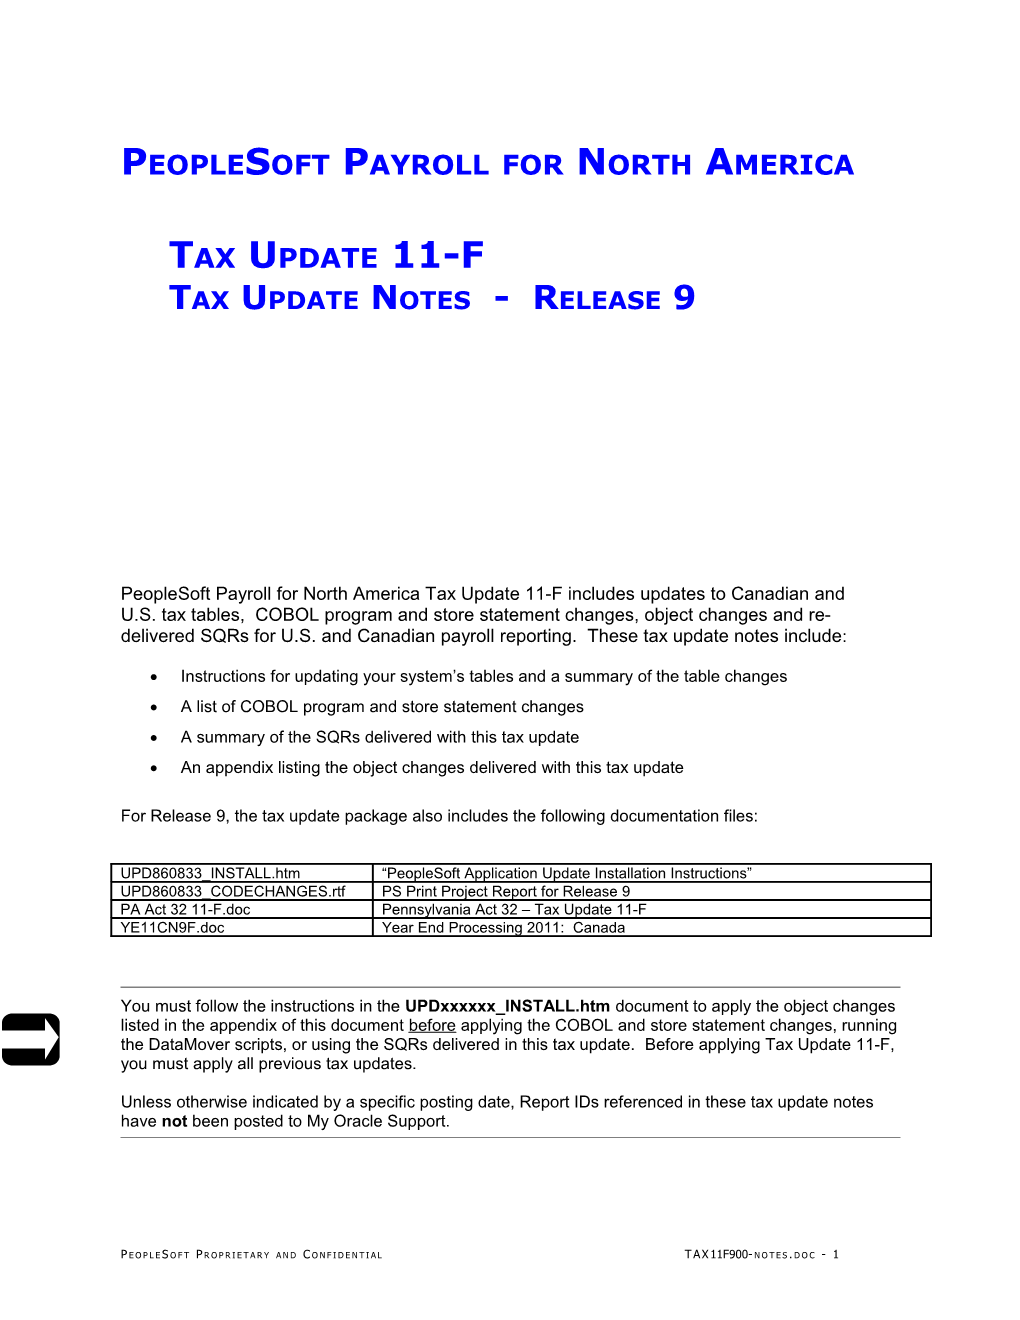 9.0 - Peoplesoft Payroll Tax Update 11-F